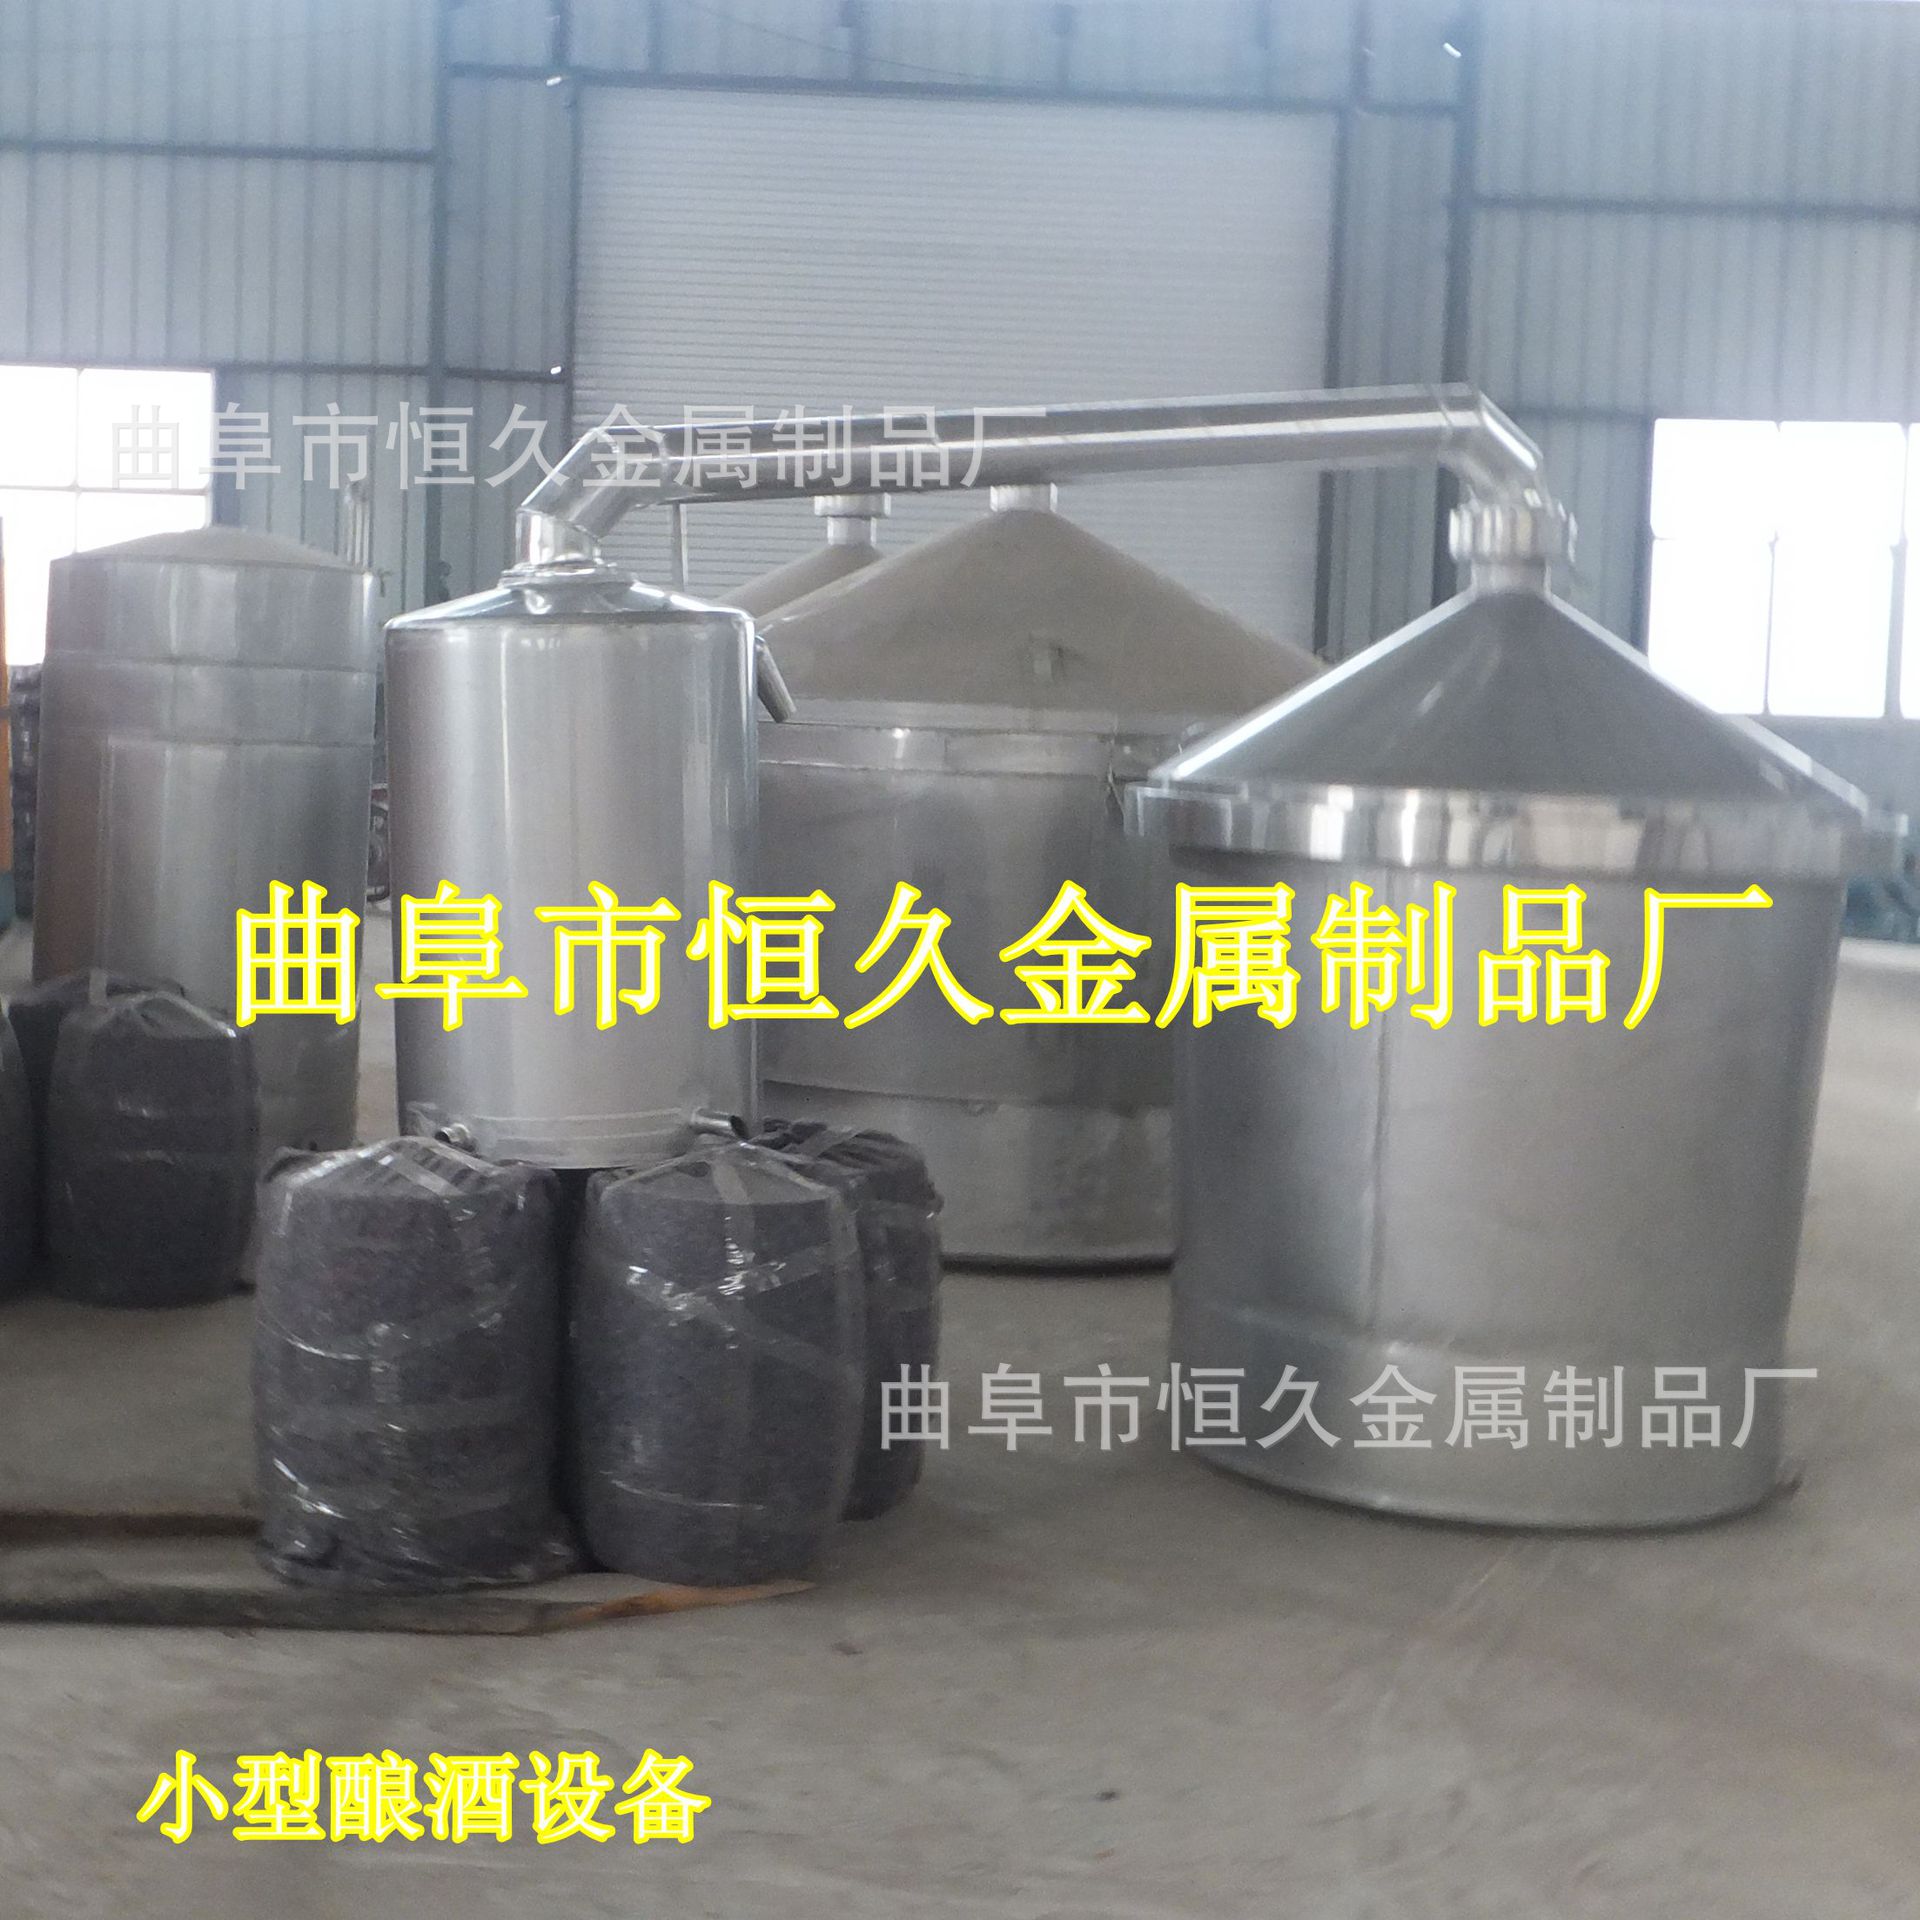 厂家热销 白酒设备 酿酒设备 蒸馏冷凝全套设备 恒久品质